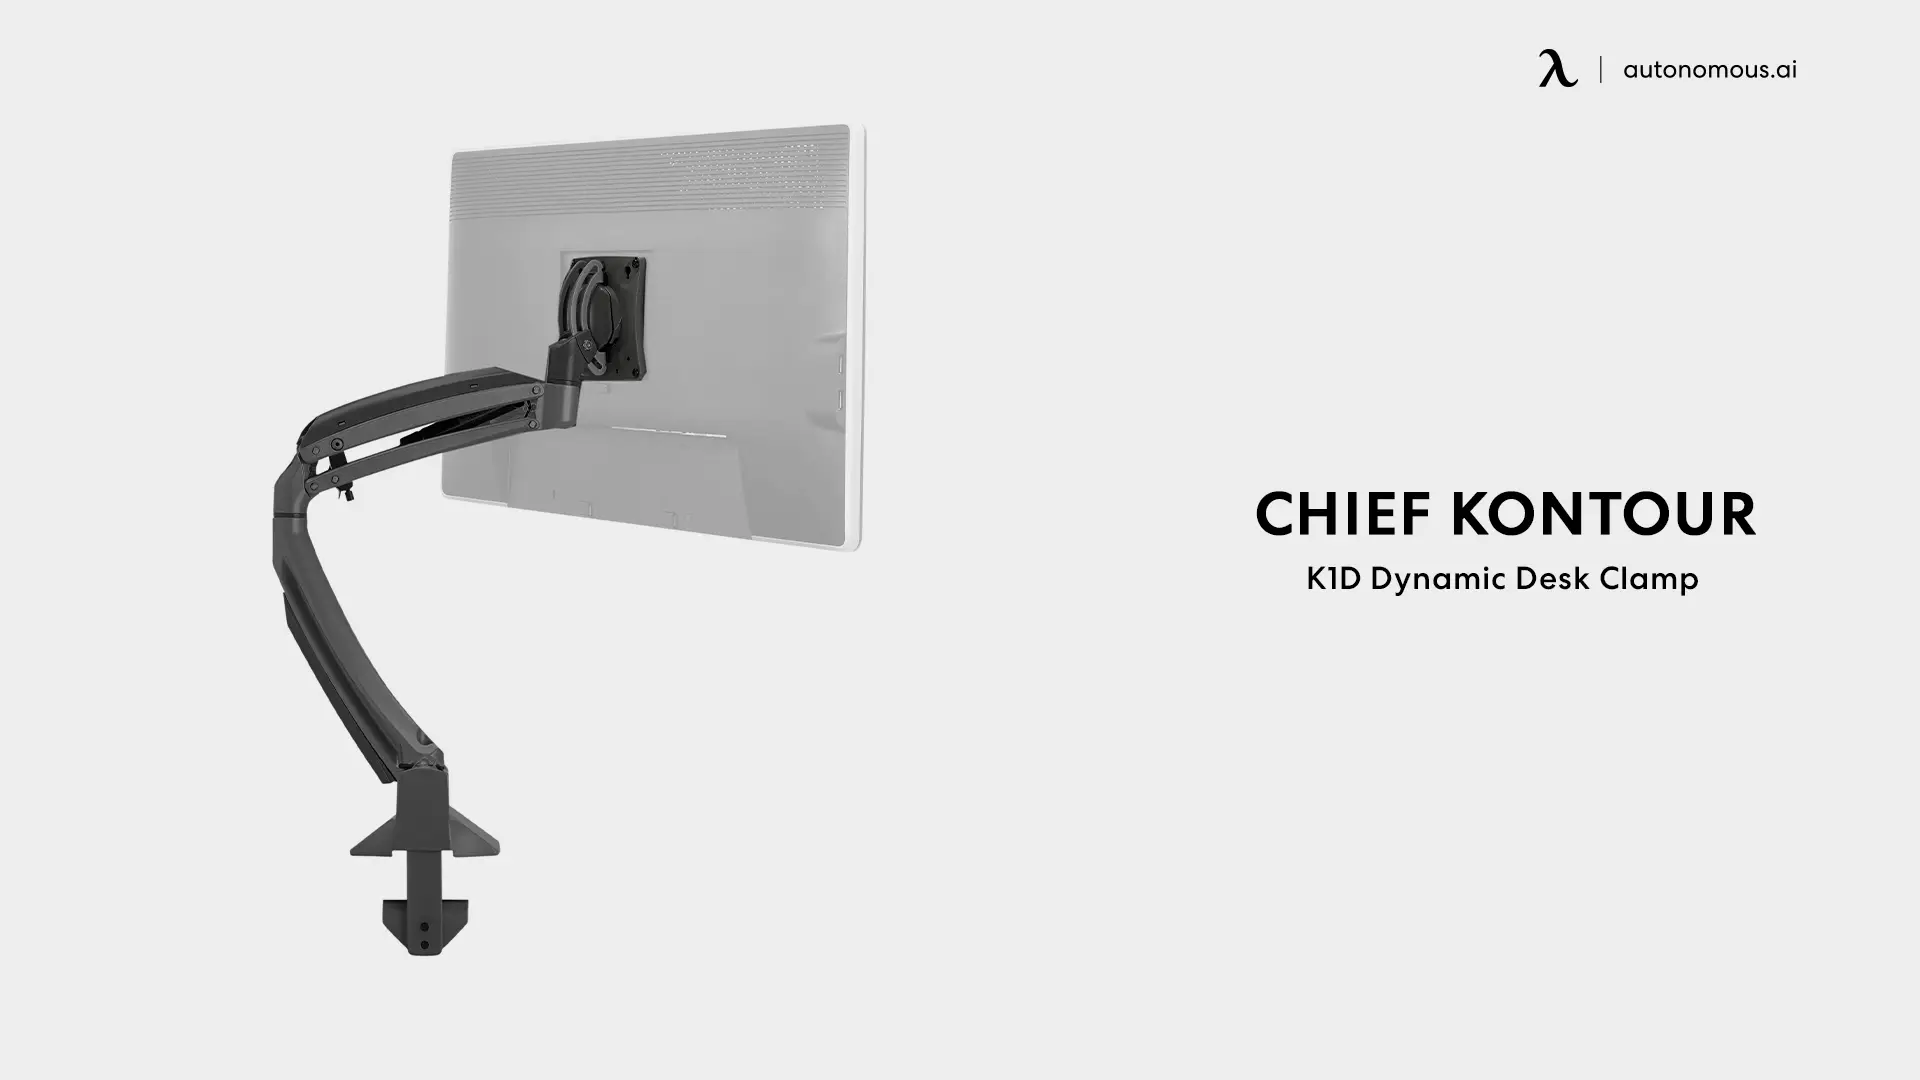 Chief Kontour K1D Dynamic Desk Clamp